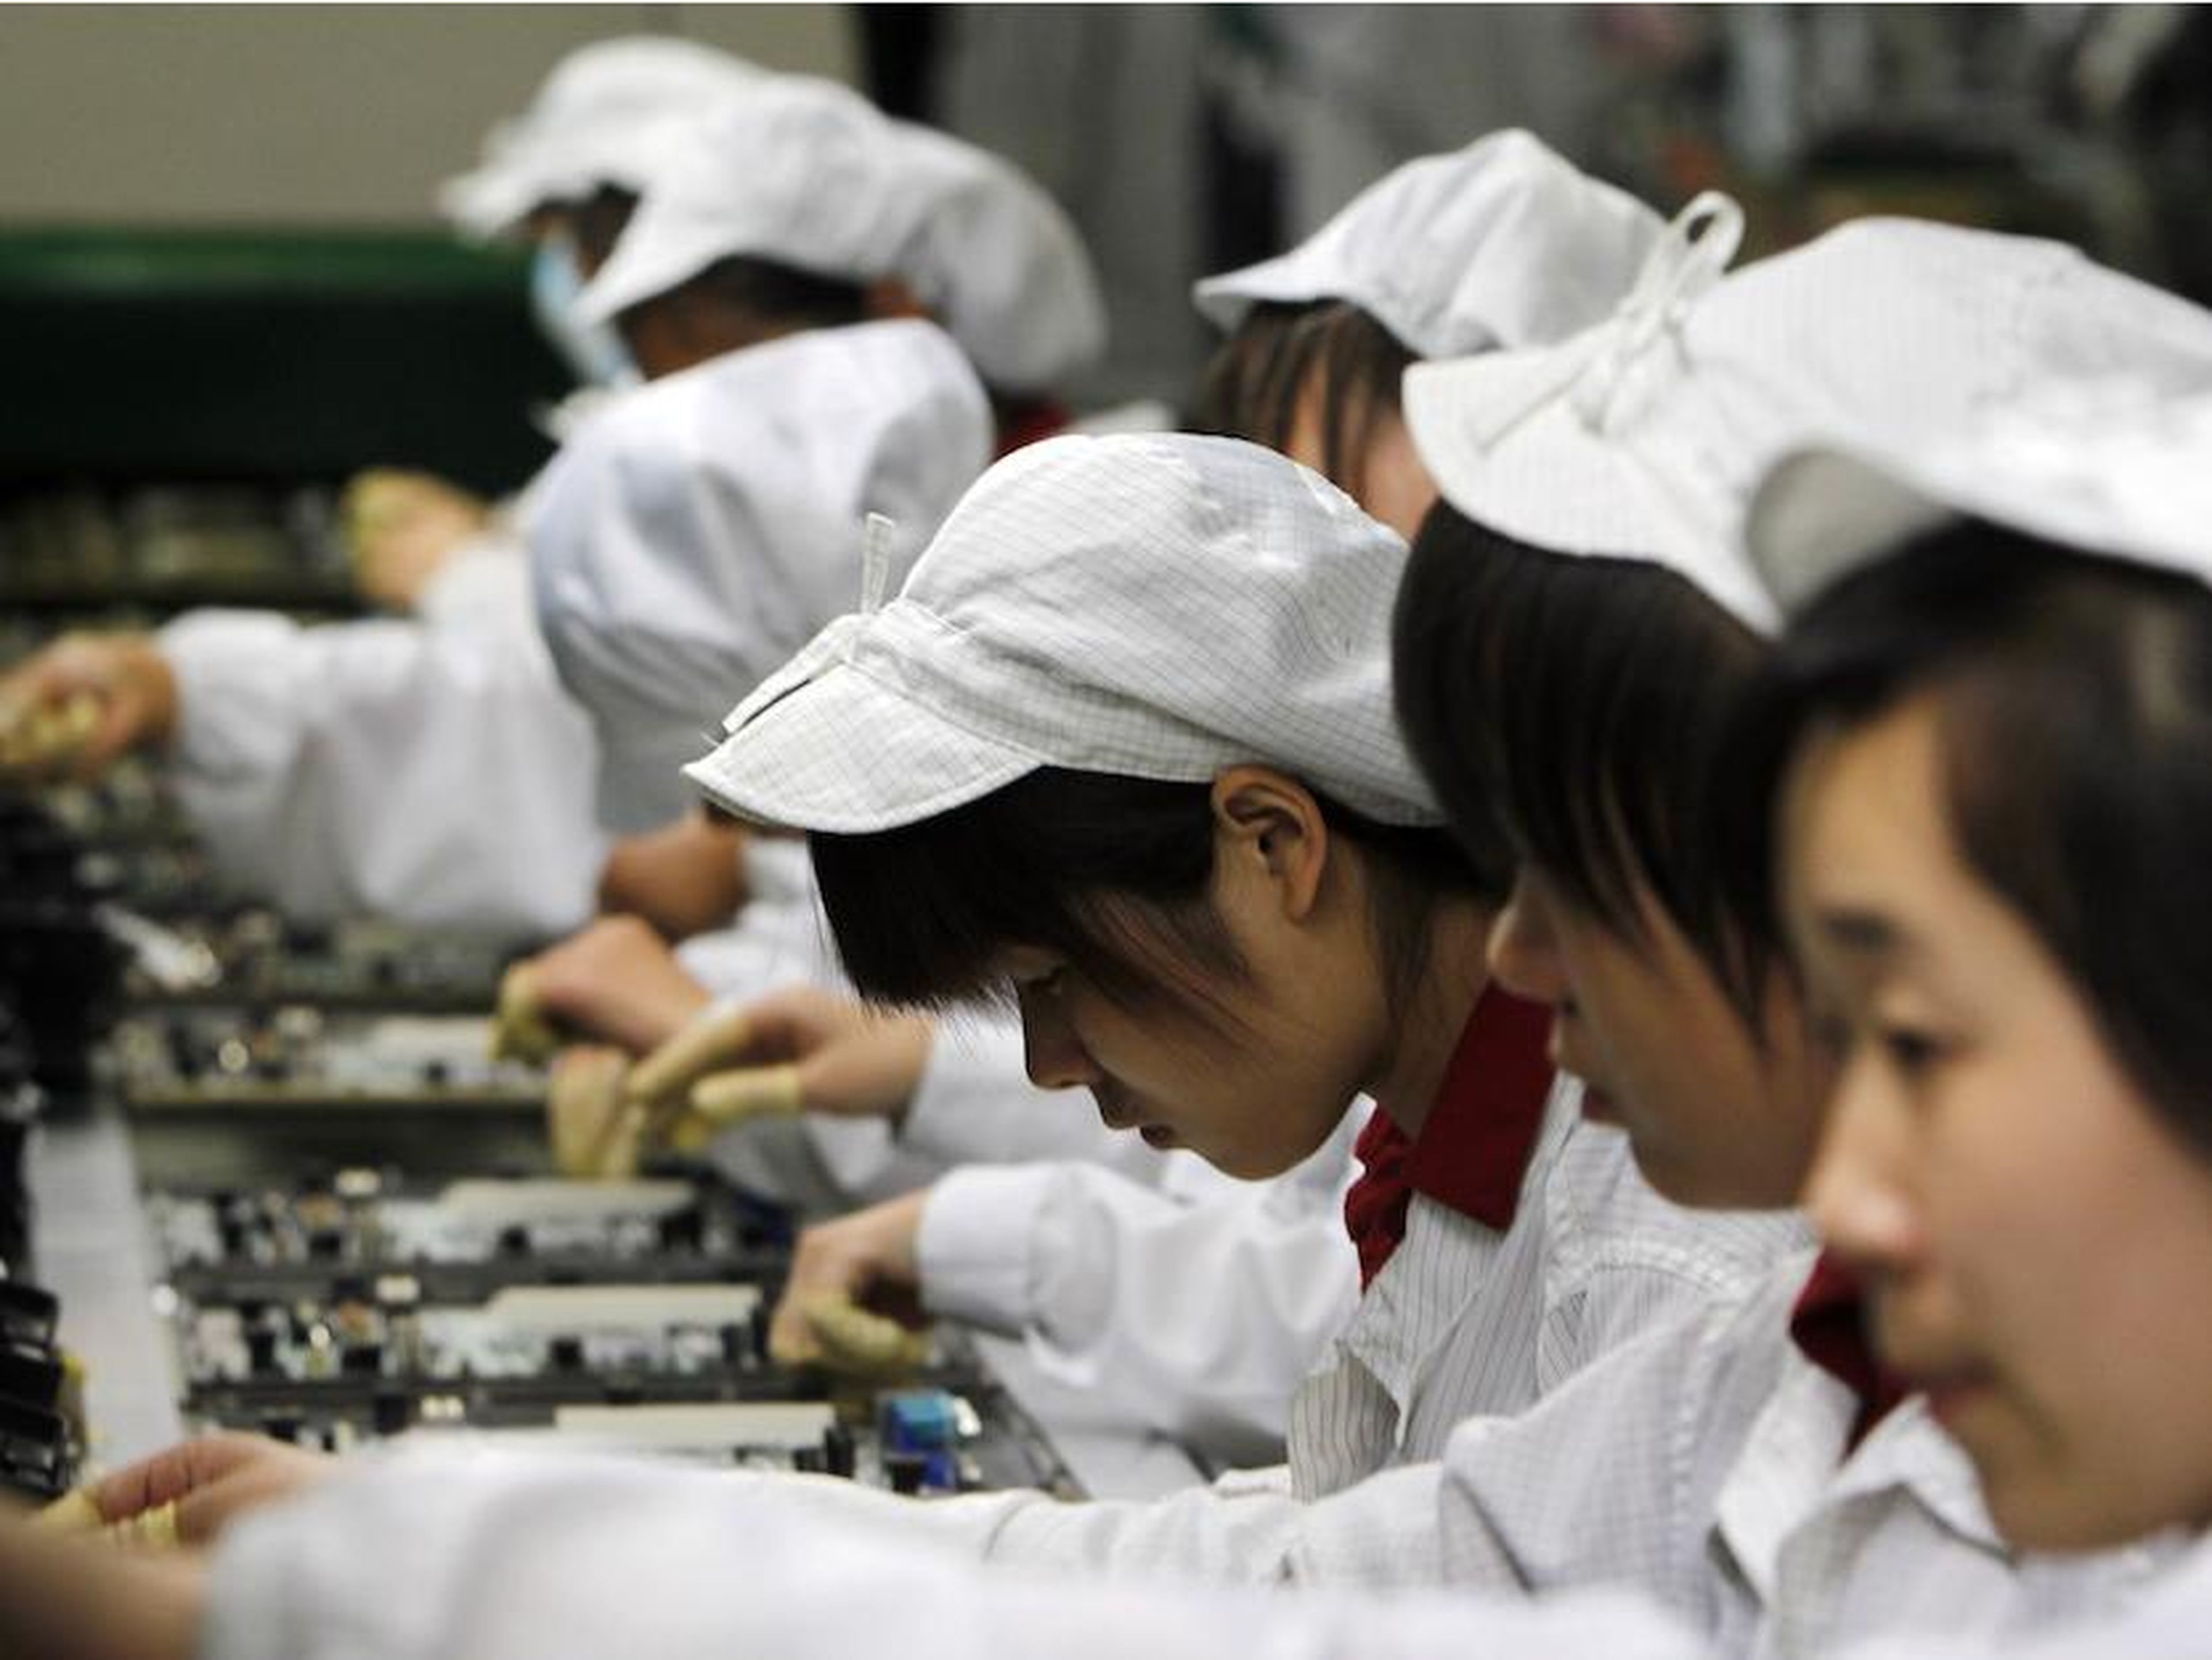 Производство товаров китай. Фабрика Фоксконн Китай. Завод Foxconn в Китае. Китайцы на заводе. Труд в Китае.